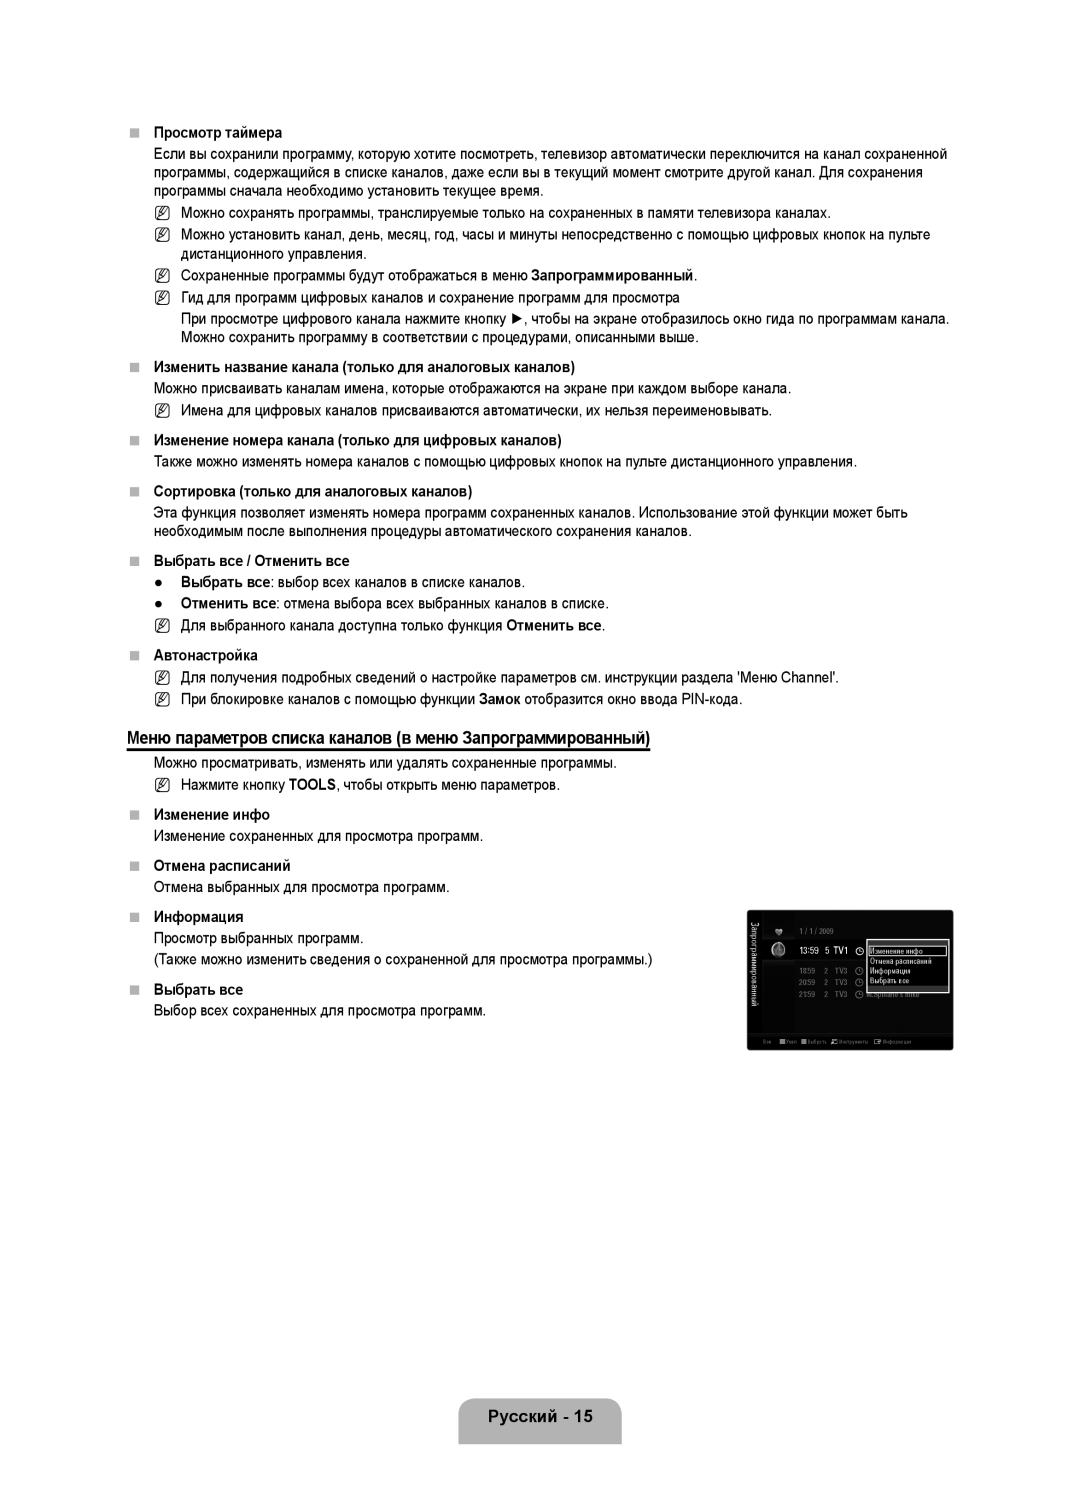 Samsung UE46B6000VWXXC Меню параметров списка каналов в меню Запрограммированный, Просмотр таймера, Автонастройка, Русский 